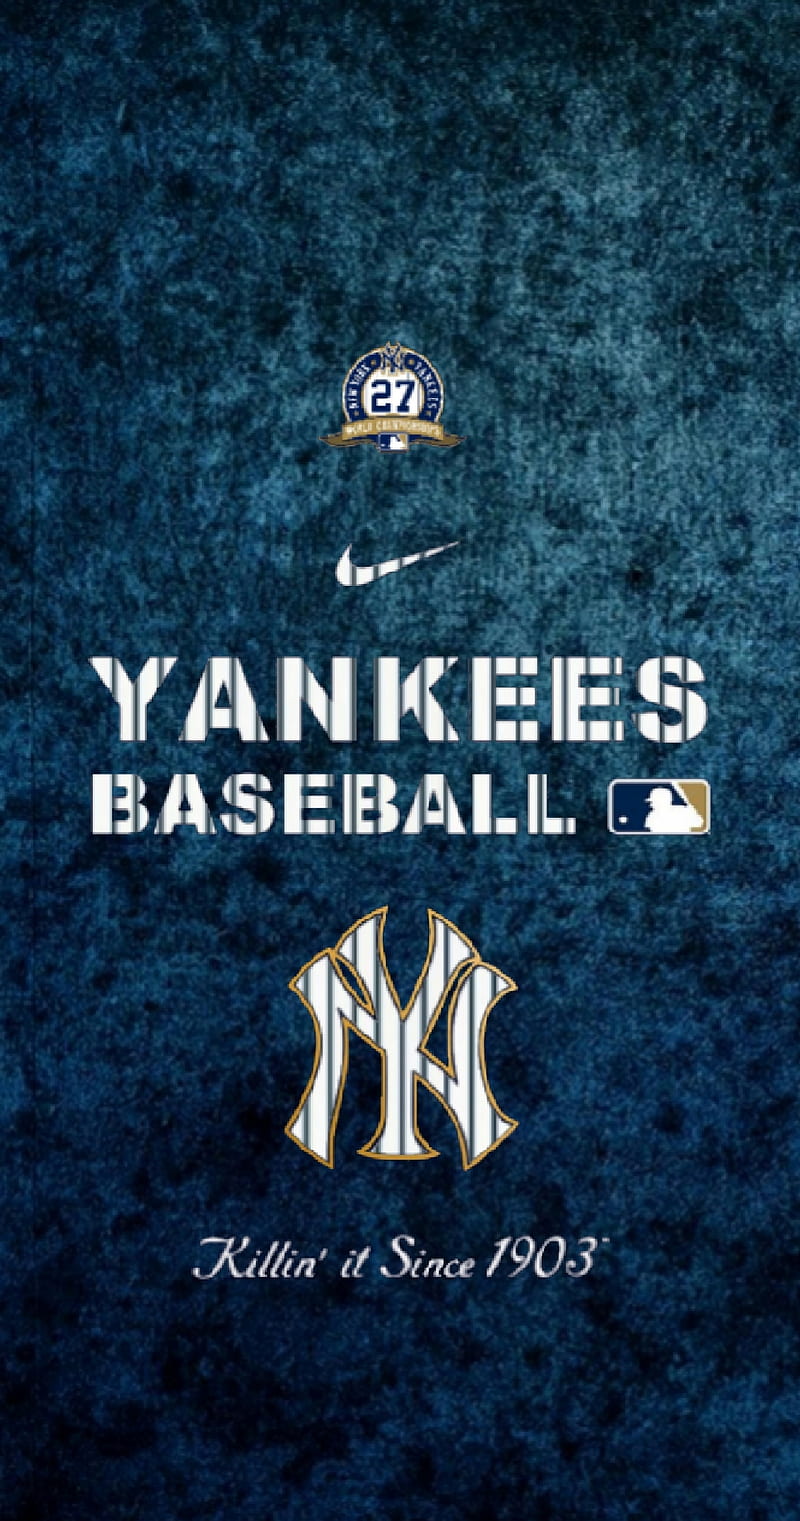 New York Yankees, bronx bombers